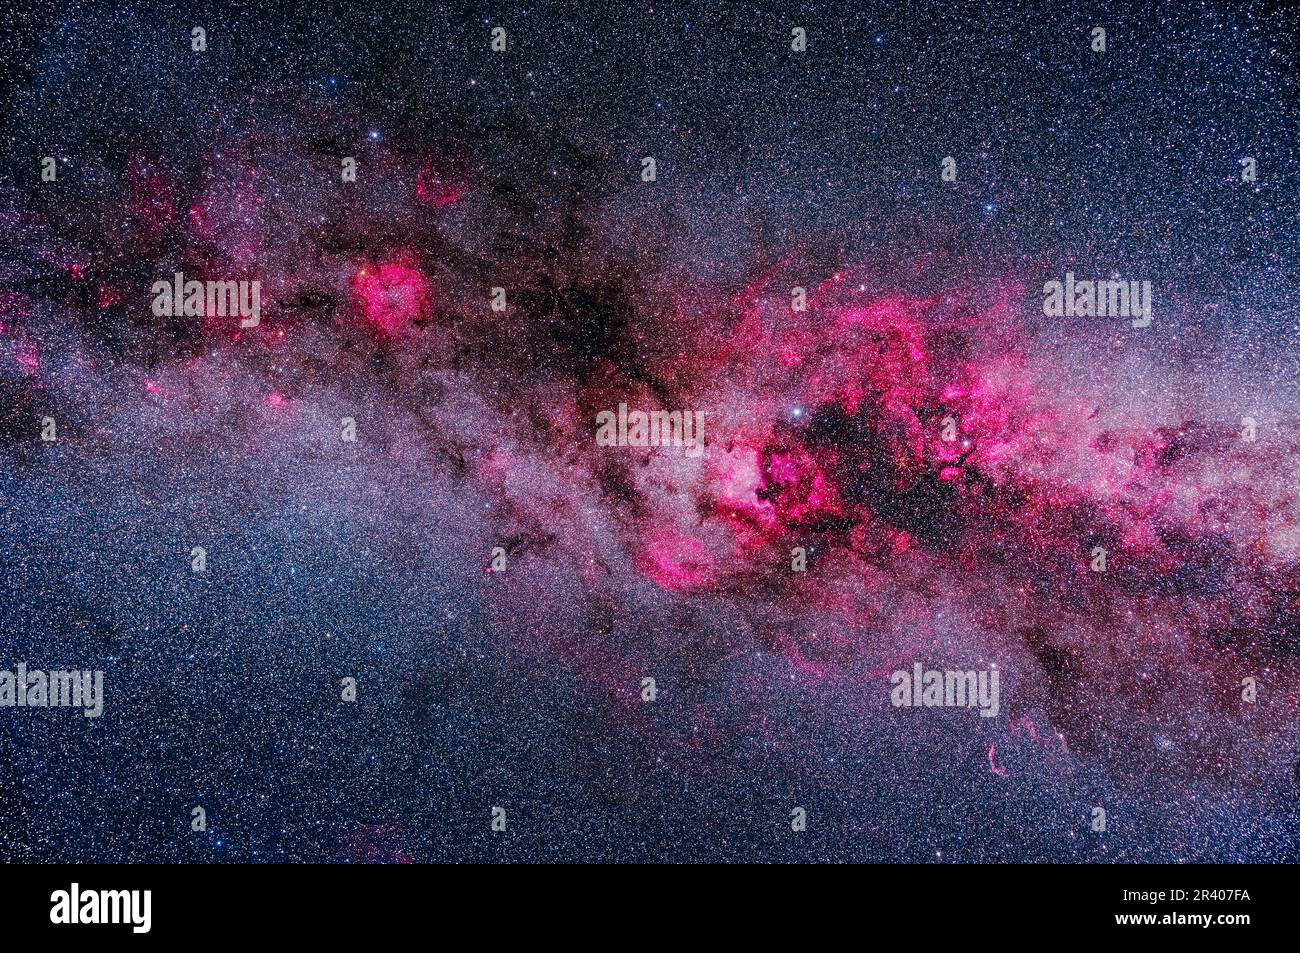 Un encadrement des principales zones de nébulosité lumineuse et sombre dans Cygnus et Cepheus, montrant des nébuleuses d'émission rose contrastant avec les régions poussiéreuses sombres dans Banque D'Images